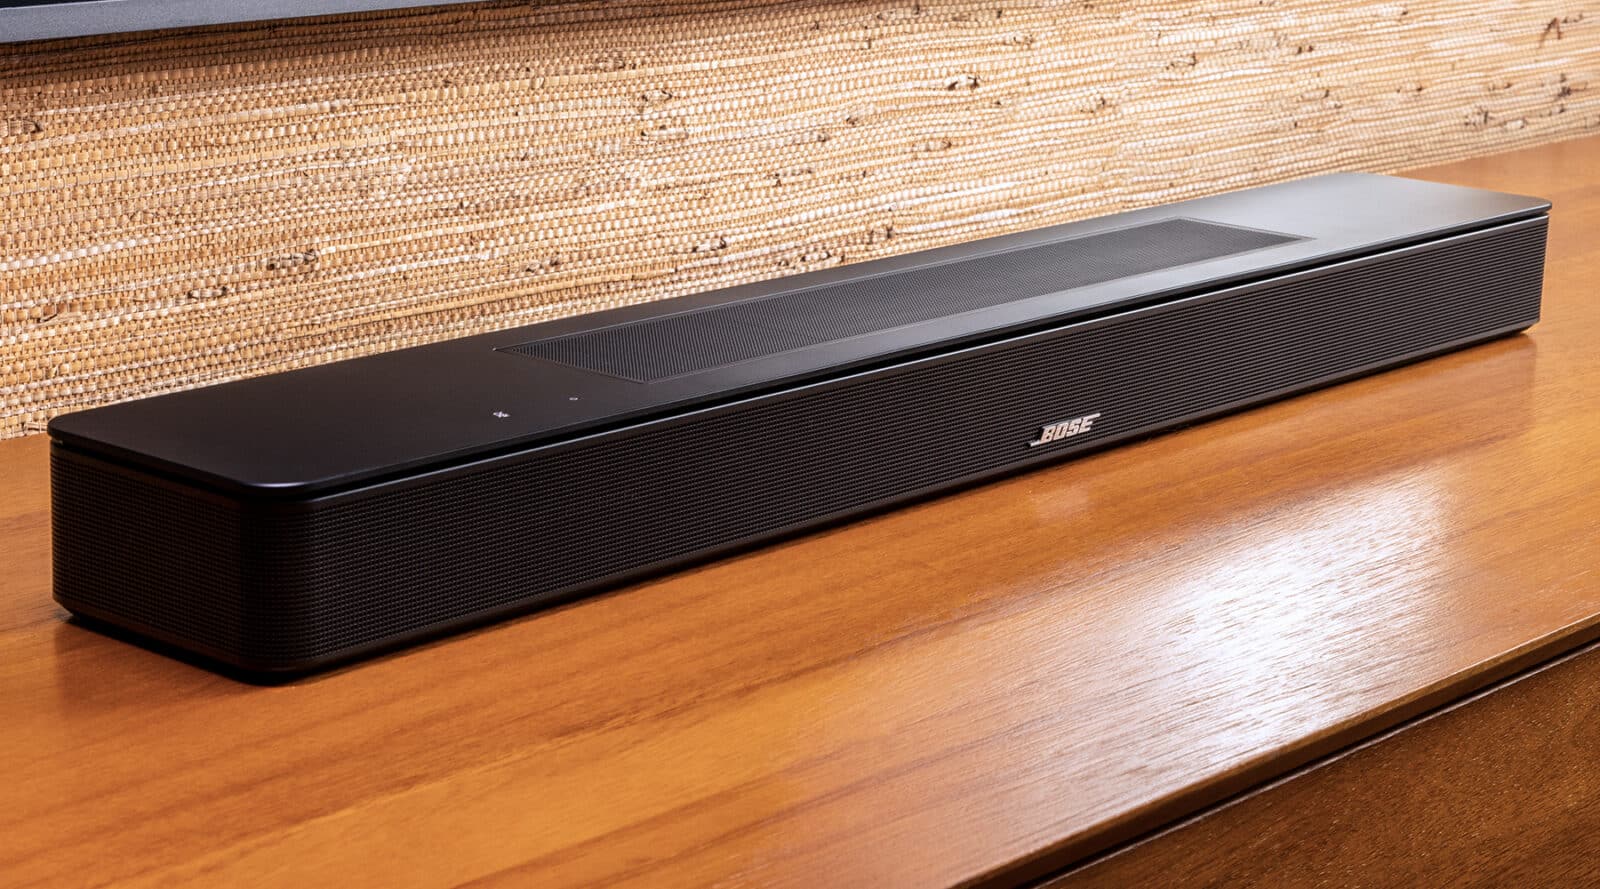 Bose annonce la barre de son Smart Soundbar 600 barre de son